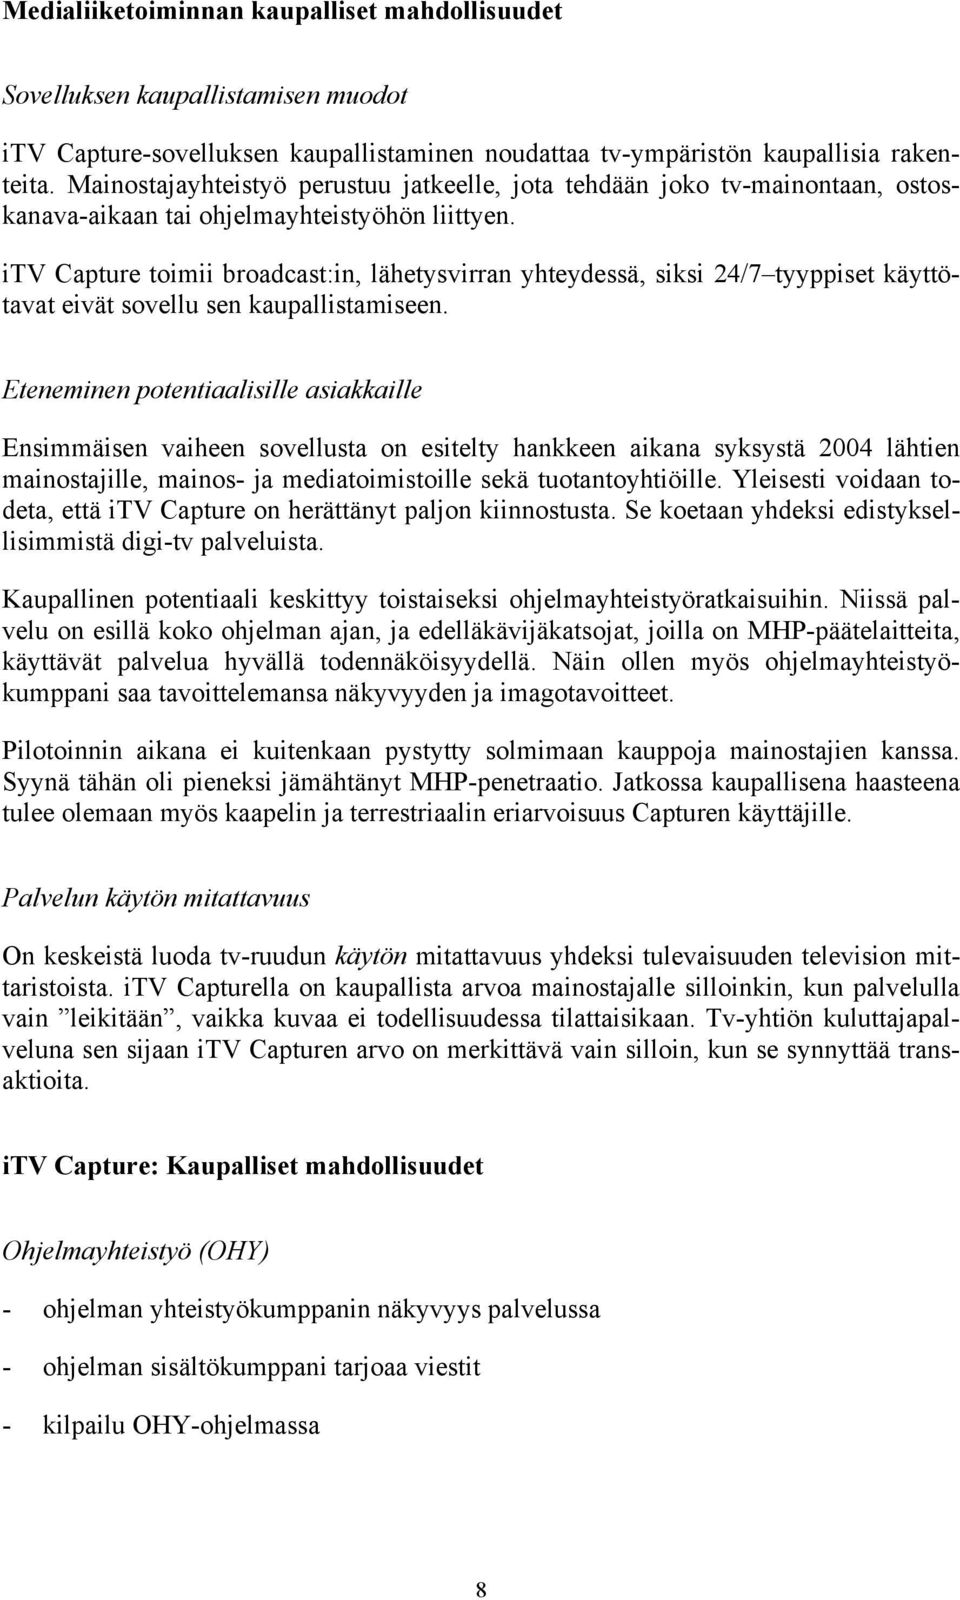 itv Capture toimii broadcast:in, lähetysvirran yhteydessä, siksi 24/7 tyyppiset käyttötavat eivät sovellu sen kaupallistamiseen.